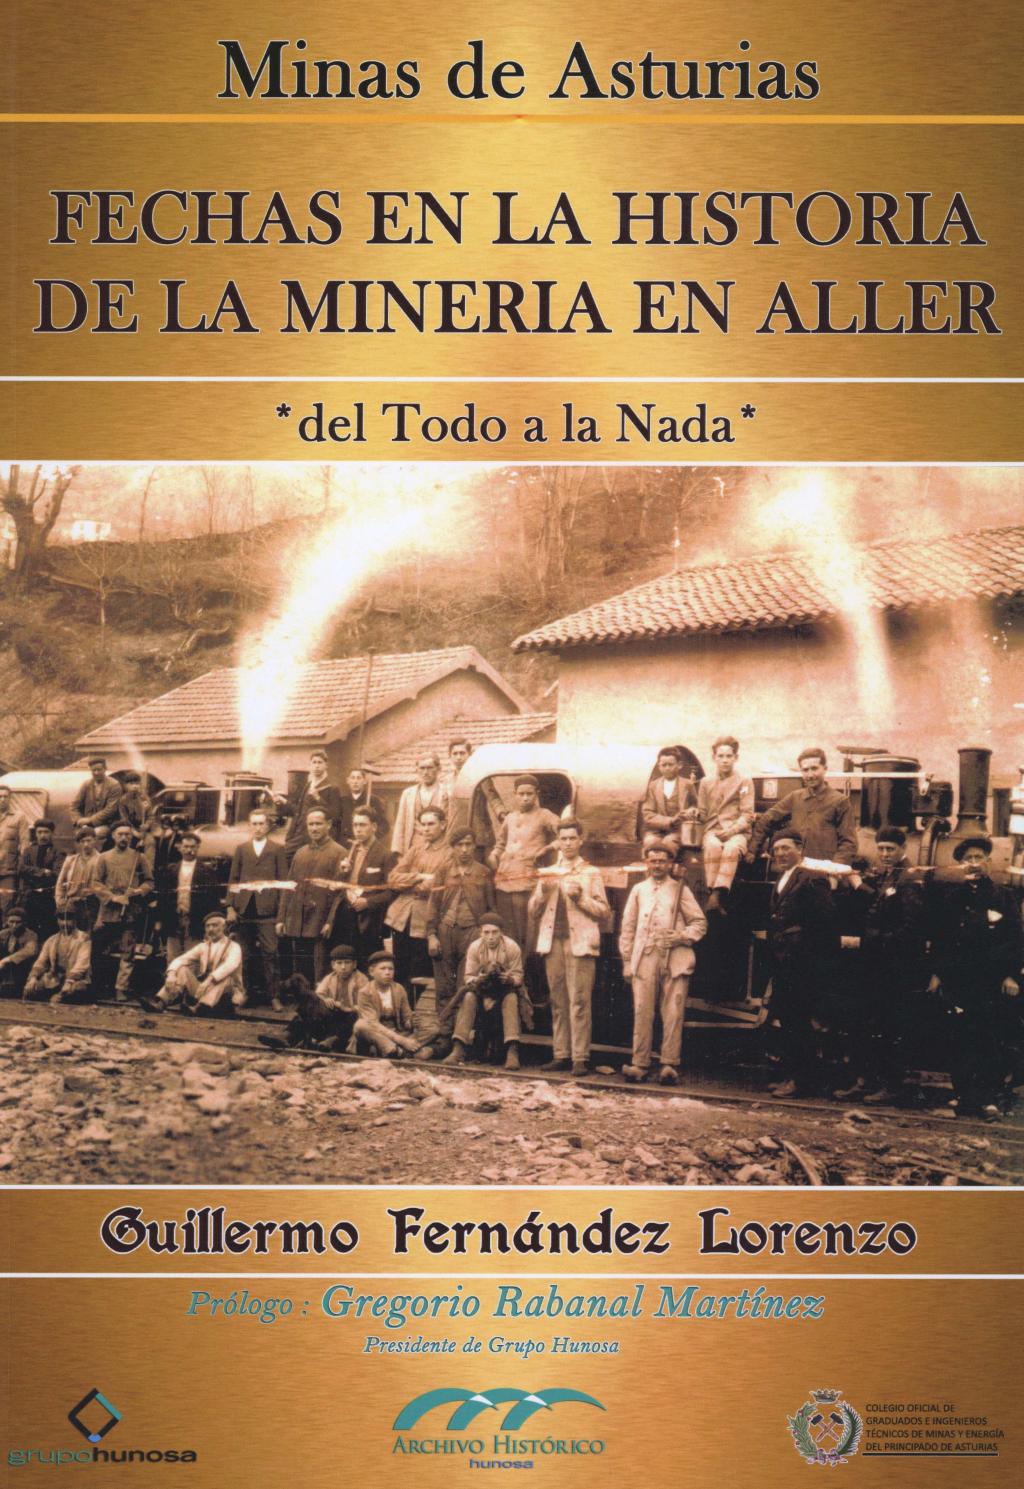 Colaboraciones Fechas en la historia de la minería en Aller